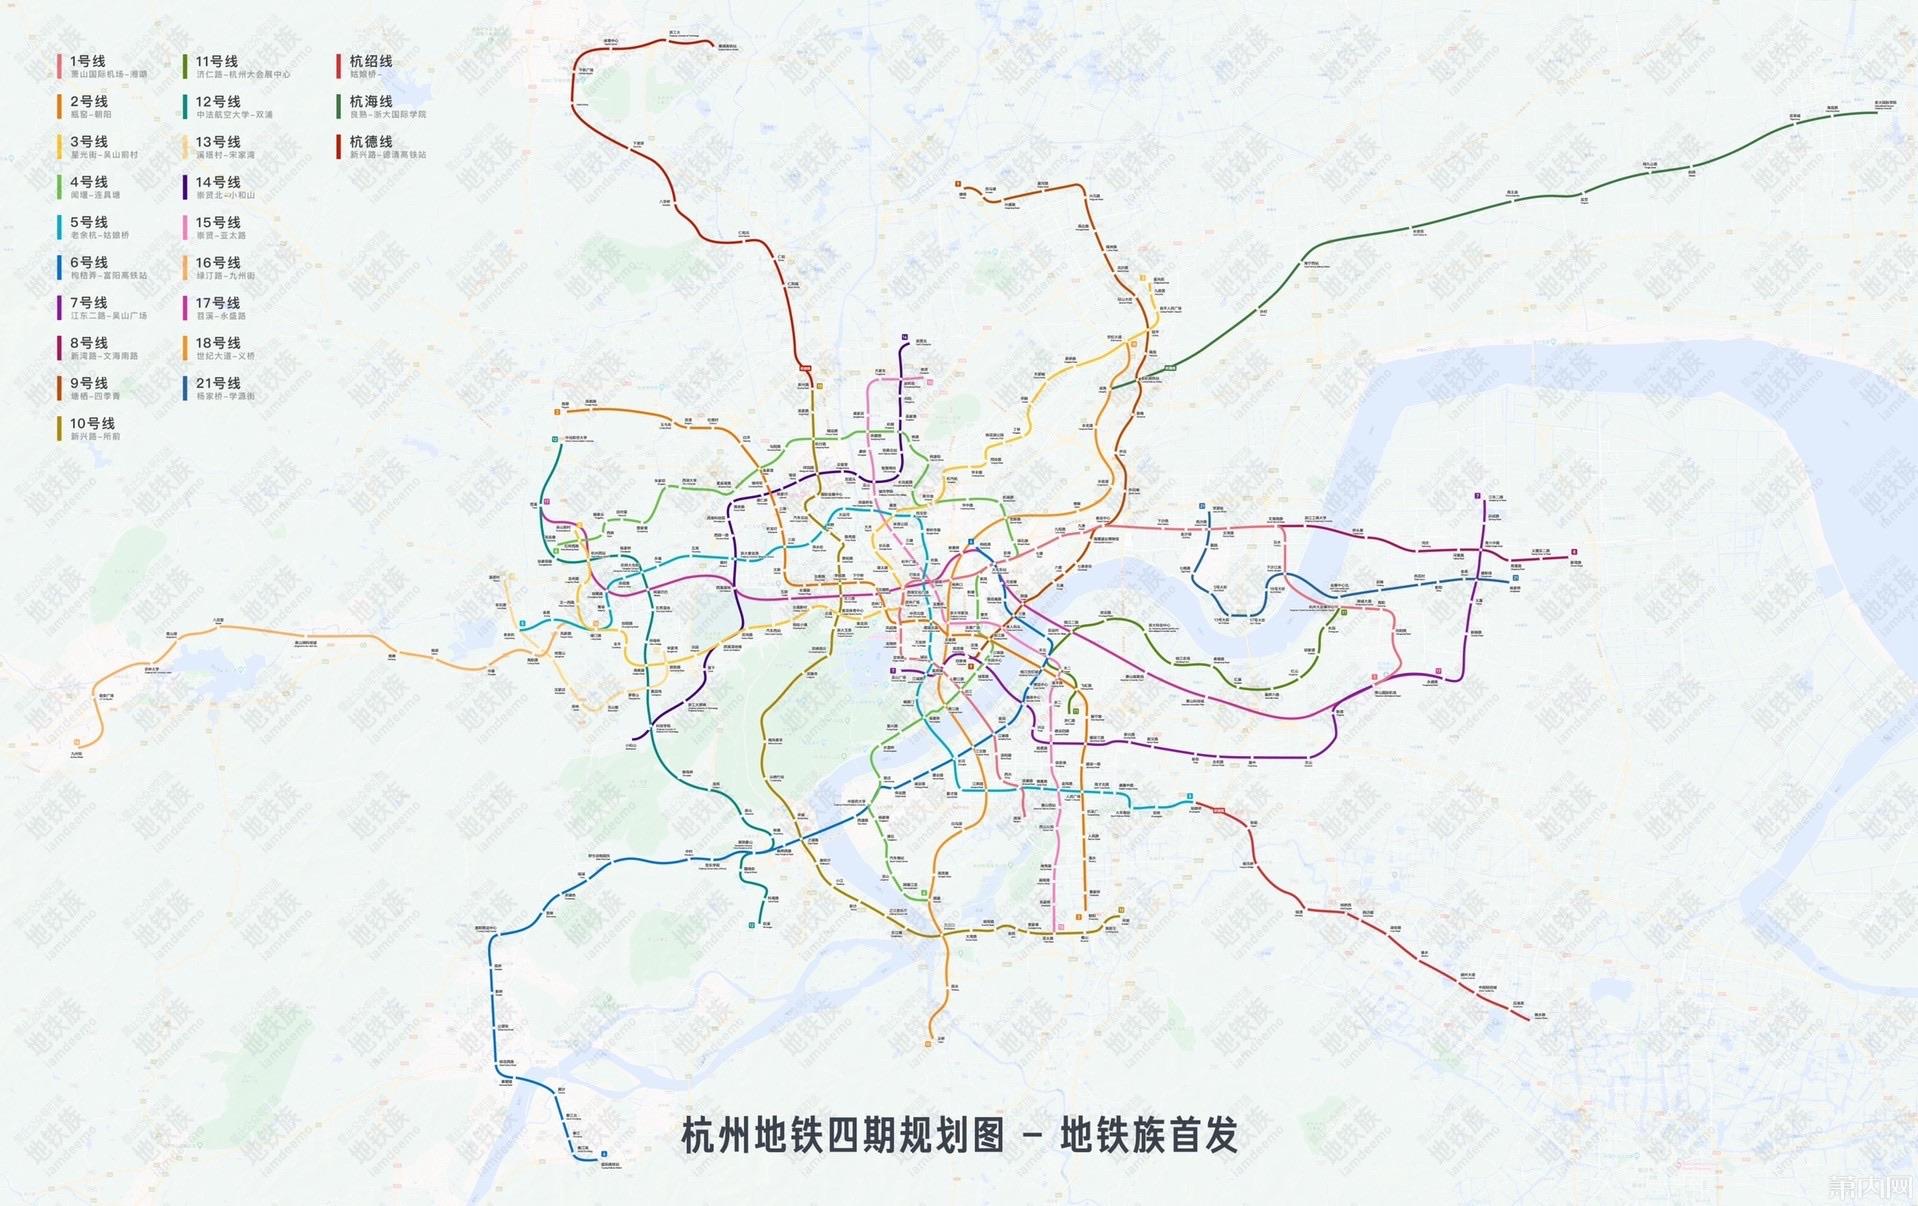 如何评价杭州地铁四期规划环评公示内容?